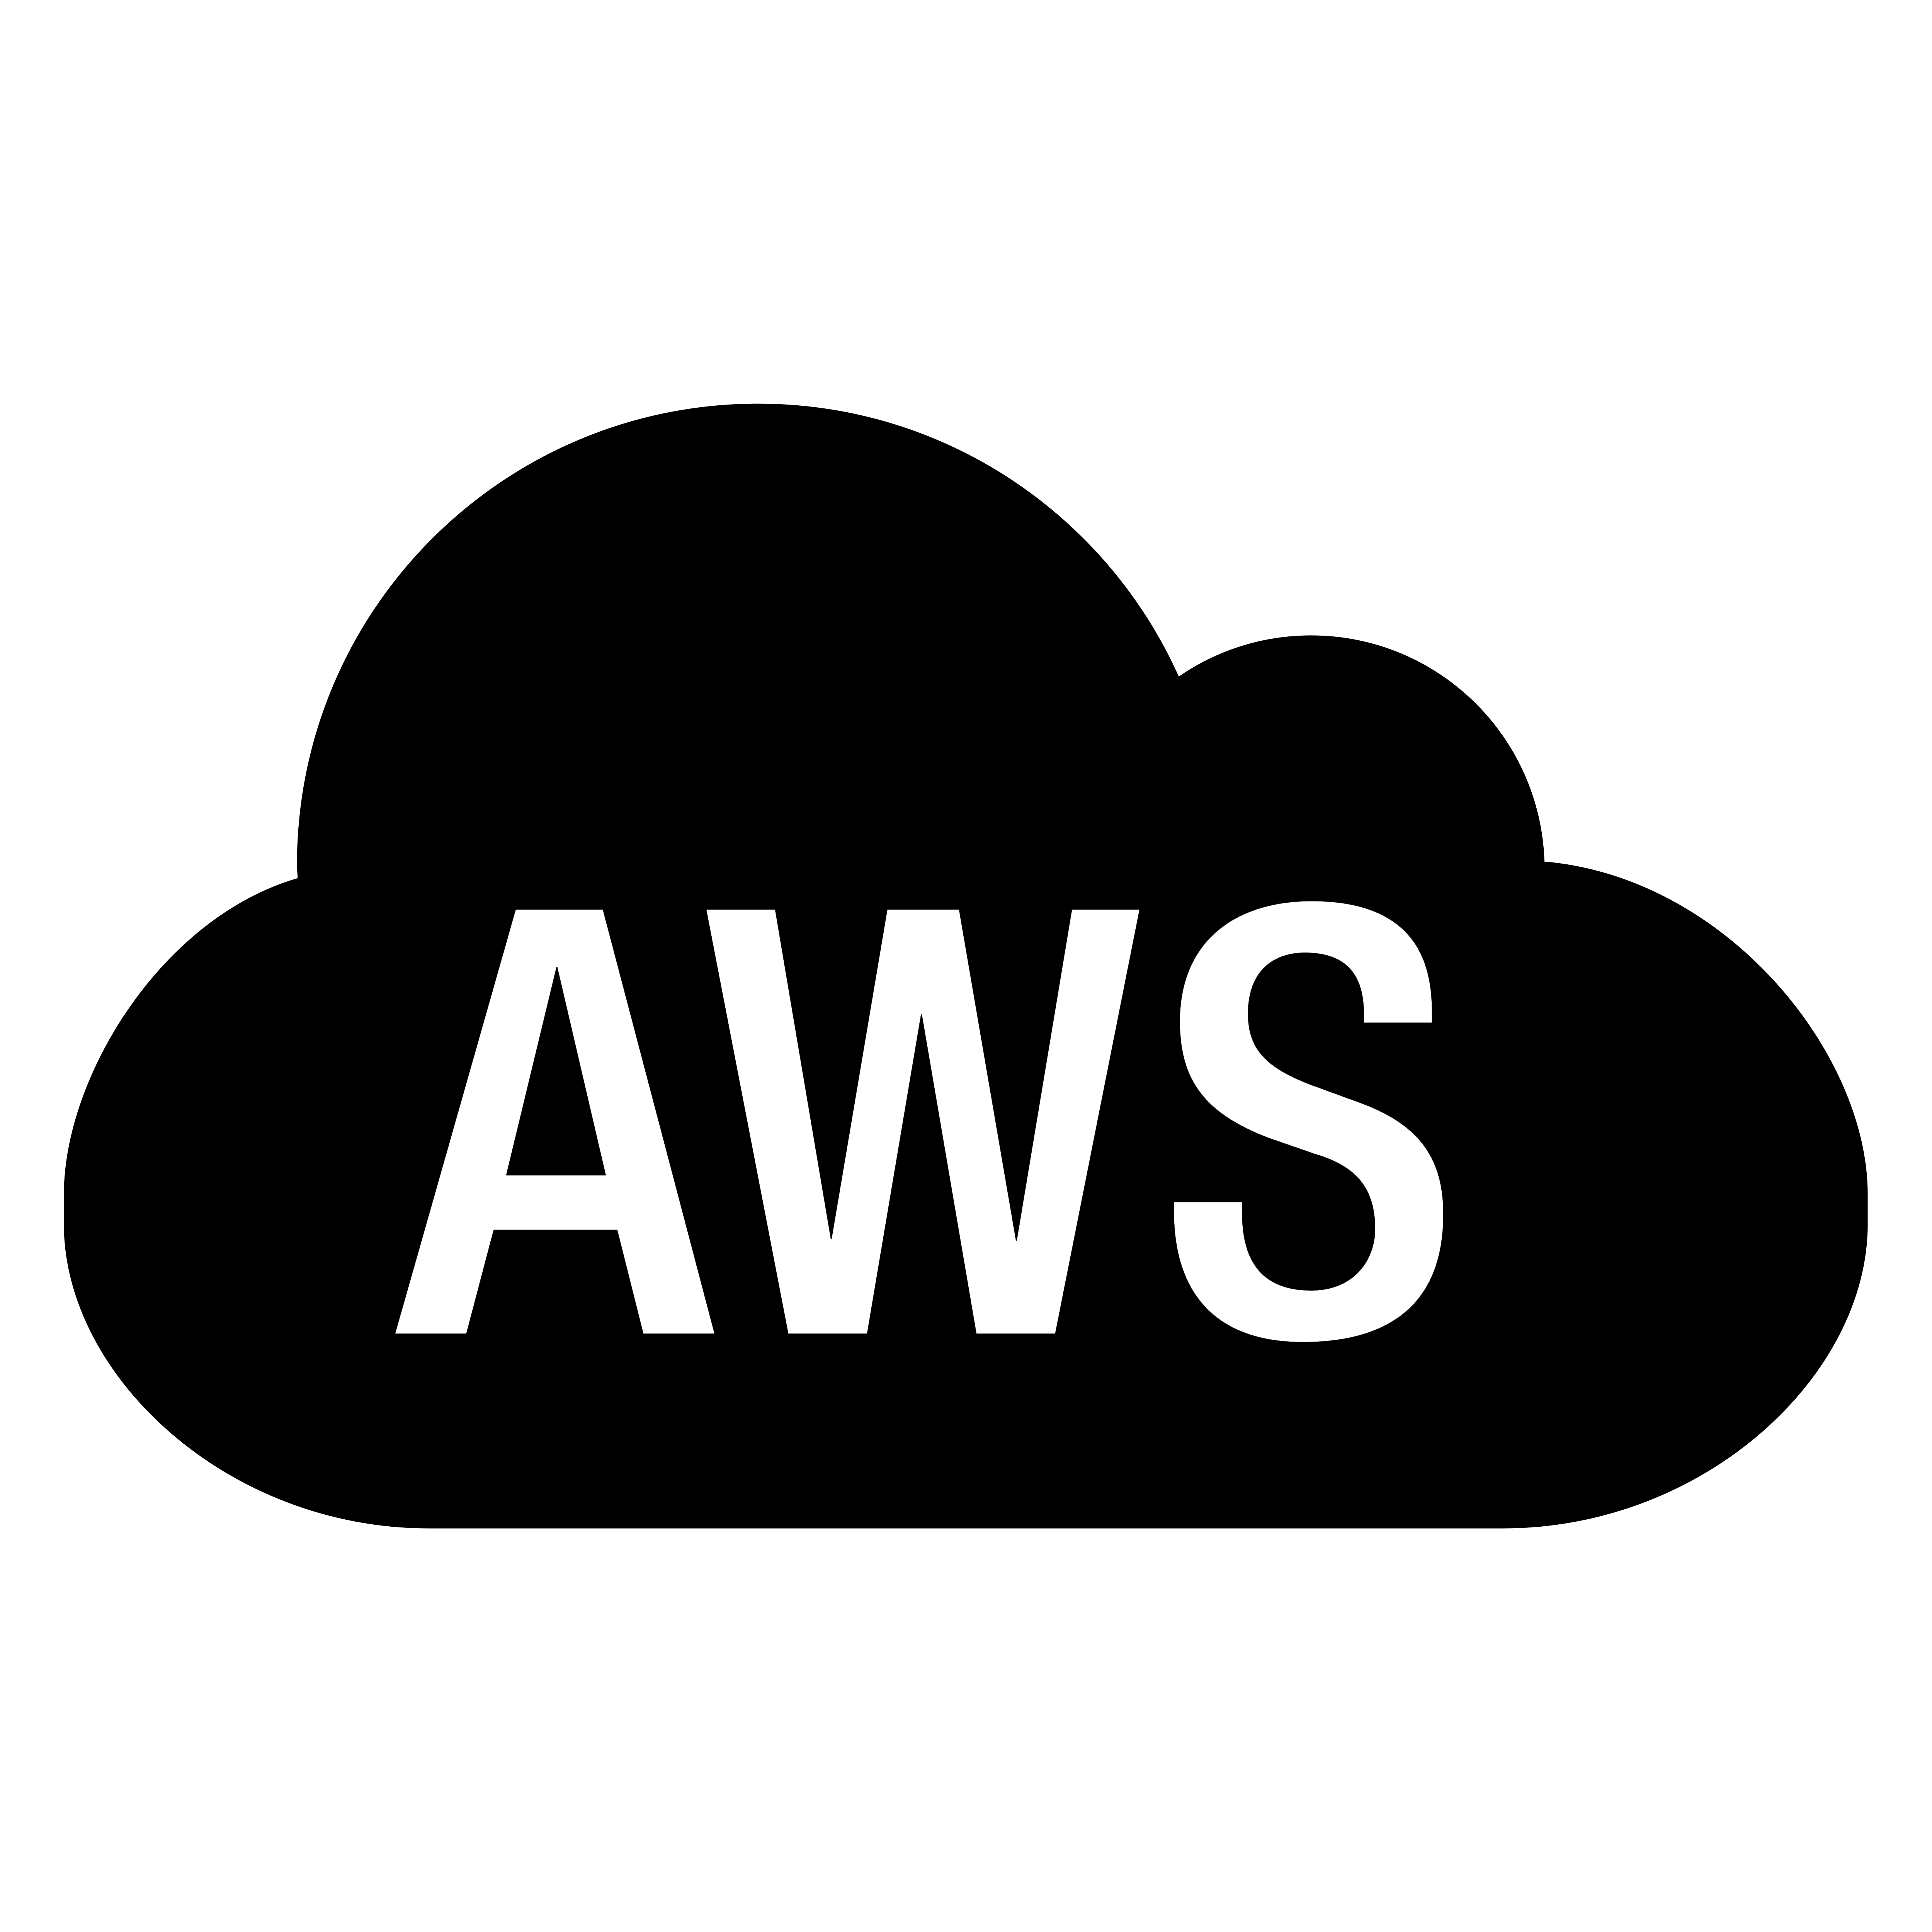 Amazon AWS Logo Transparent Photo